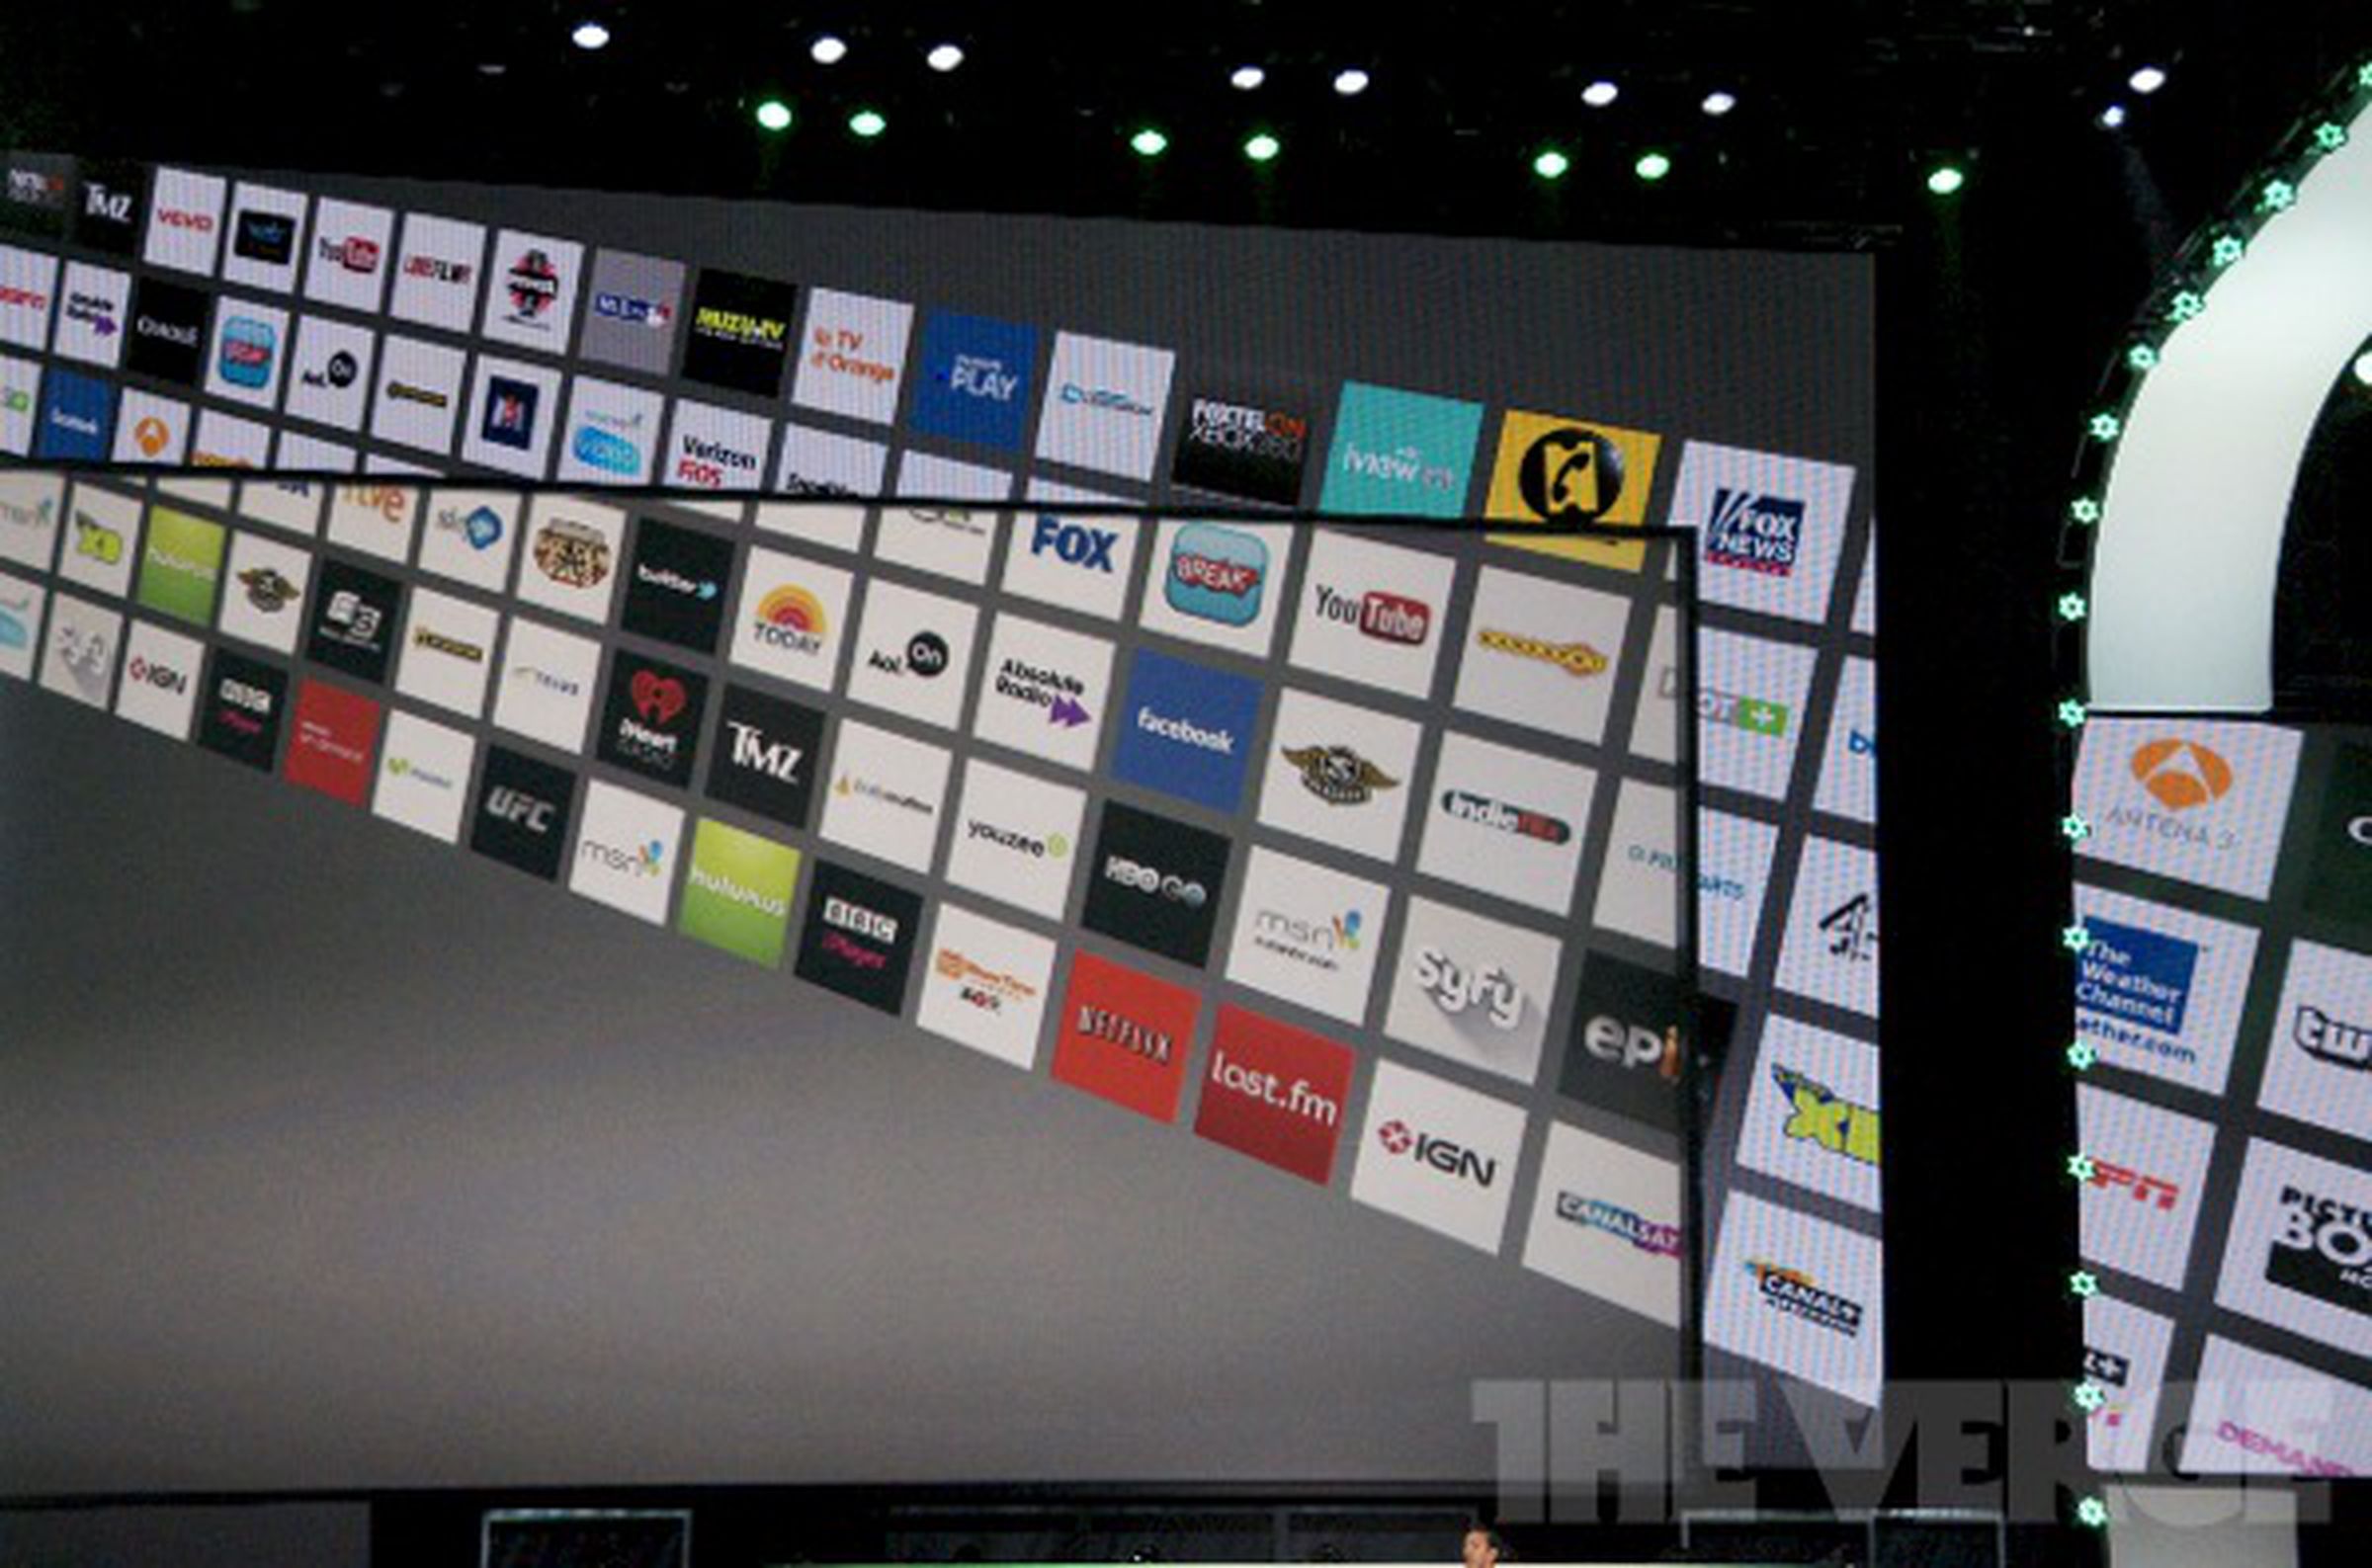 Xbox video providers E3 2012 press conference